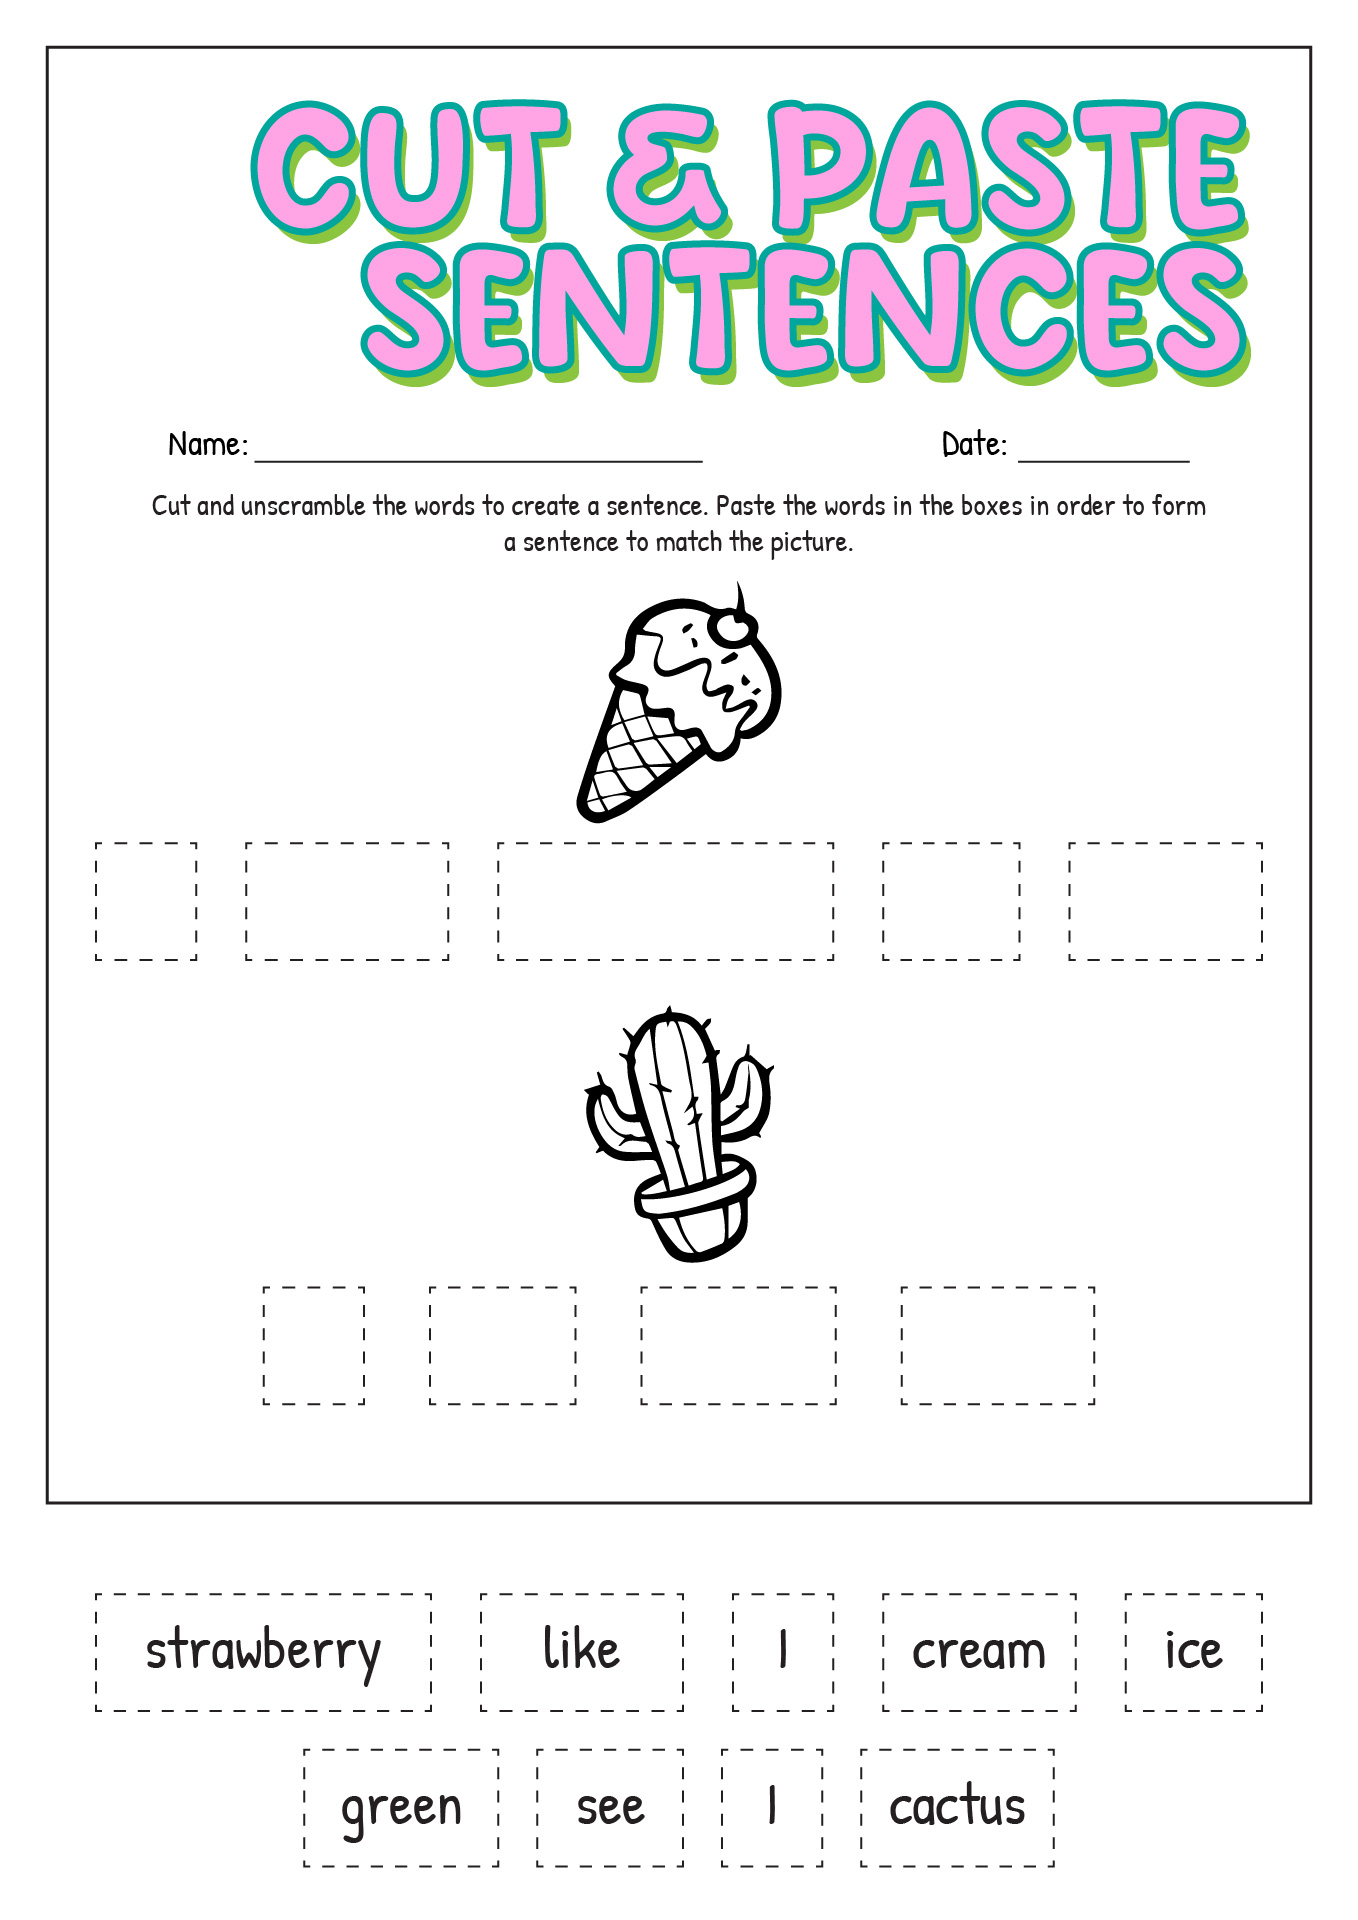 Simple Cut and Paste Sentences Image